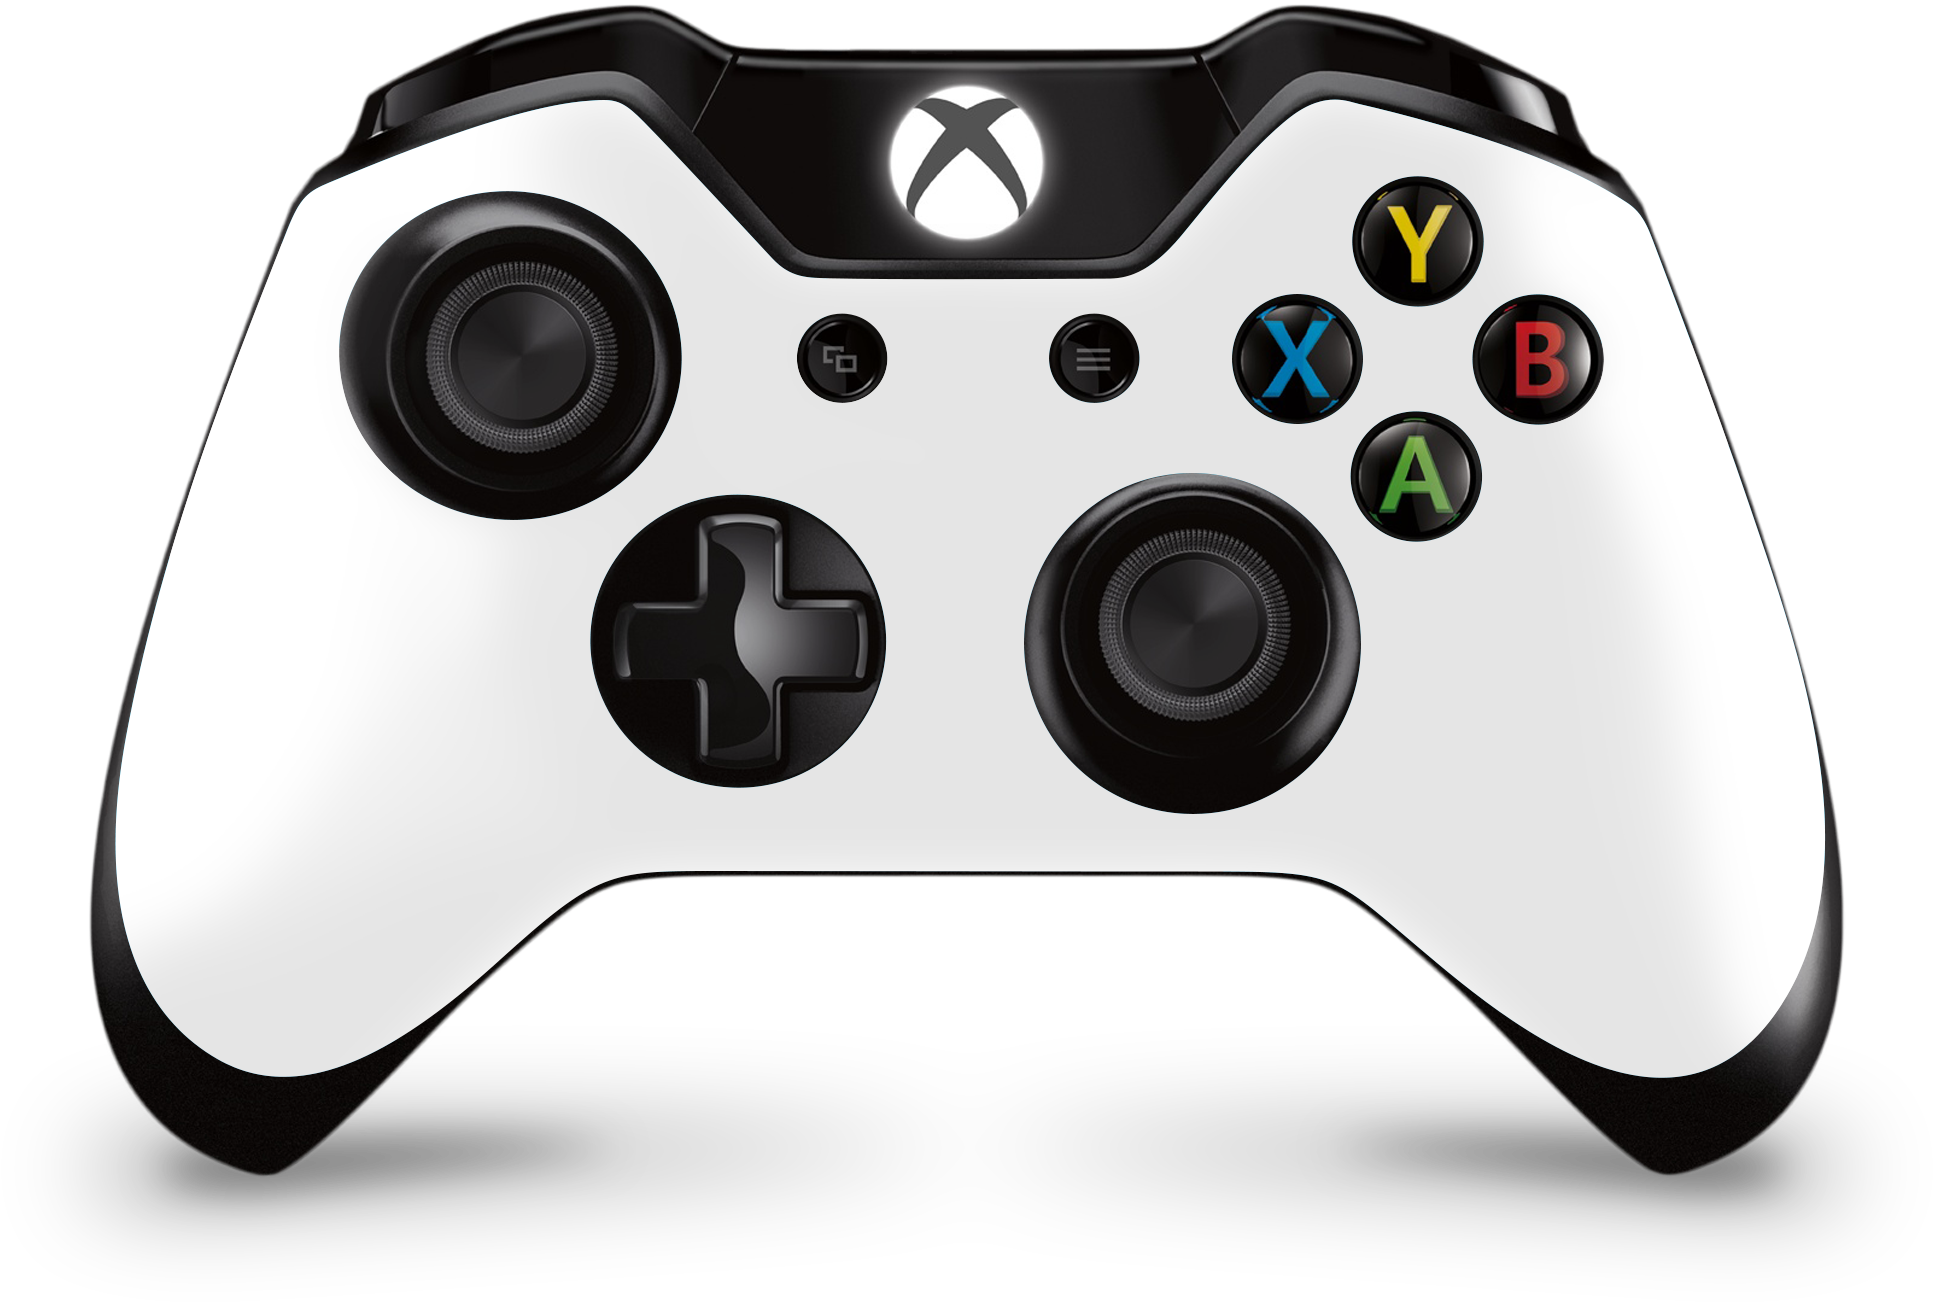 Hãy tải về điều khiển từ xa Xbox để trải nghiệm trò chơi đầy hồi hộp trên Xbox của bạn. Với tính năng điều khiển chính xác và nhạy bén, bạn sẽ trở thành người chơi mạnh nhất trong thế giới game.